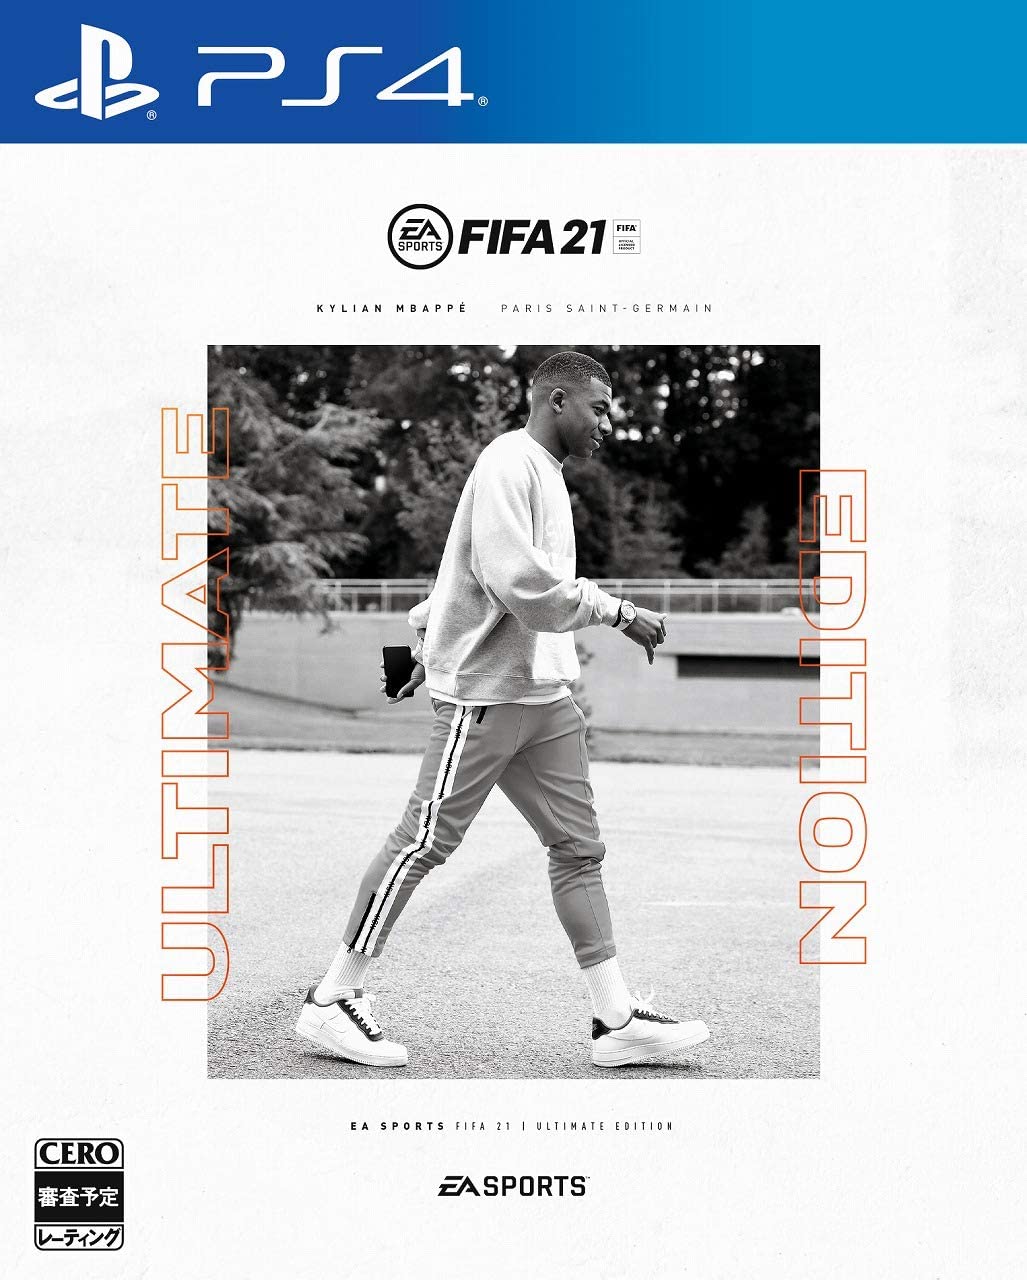 【ご予約品】 21 FIFA ULTIMATE FUTアンバサダ & キャリアモードの地元出身選手 & カバー選手のレンタルアイテム(FUT5試合) & EDITION【限定版同梱物】最大24個のレアゴールドパック ゲームソフト